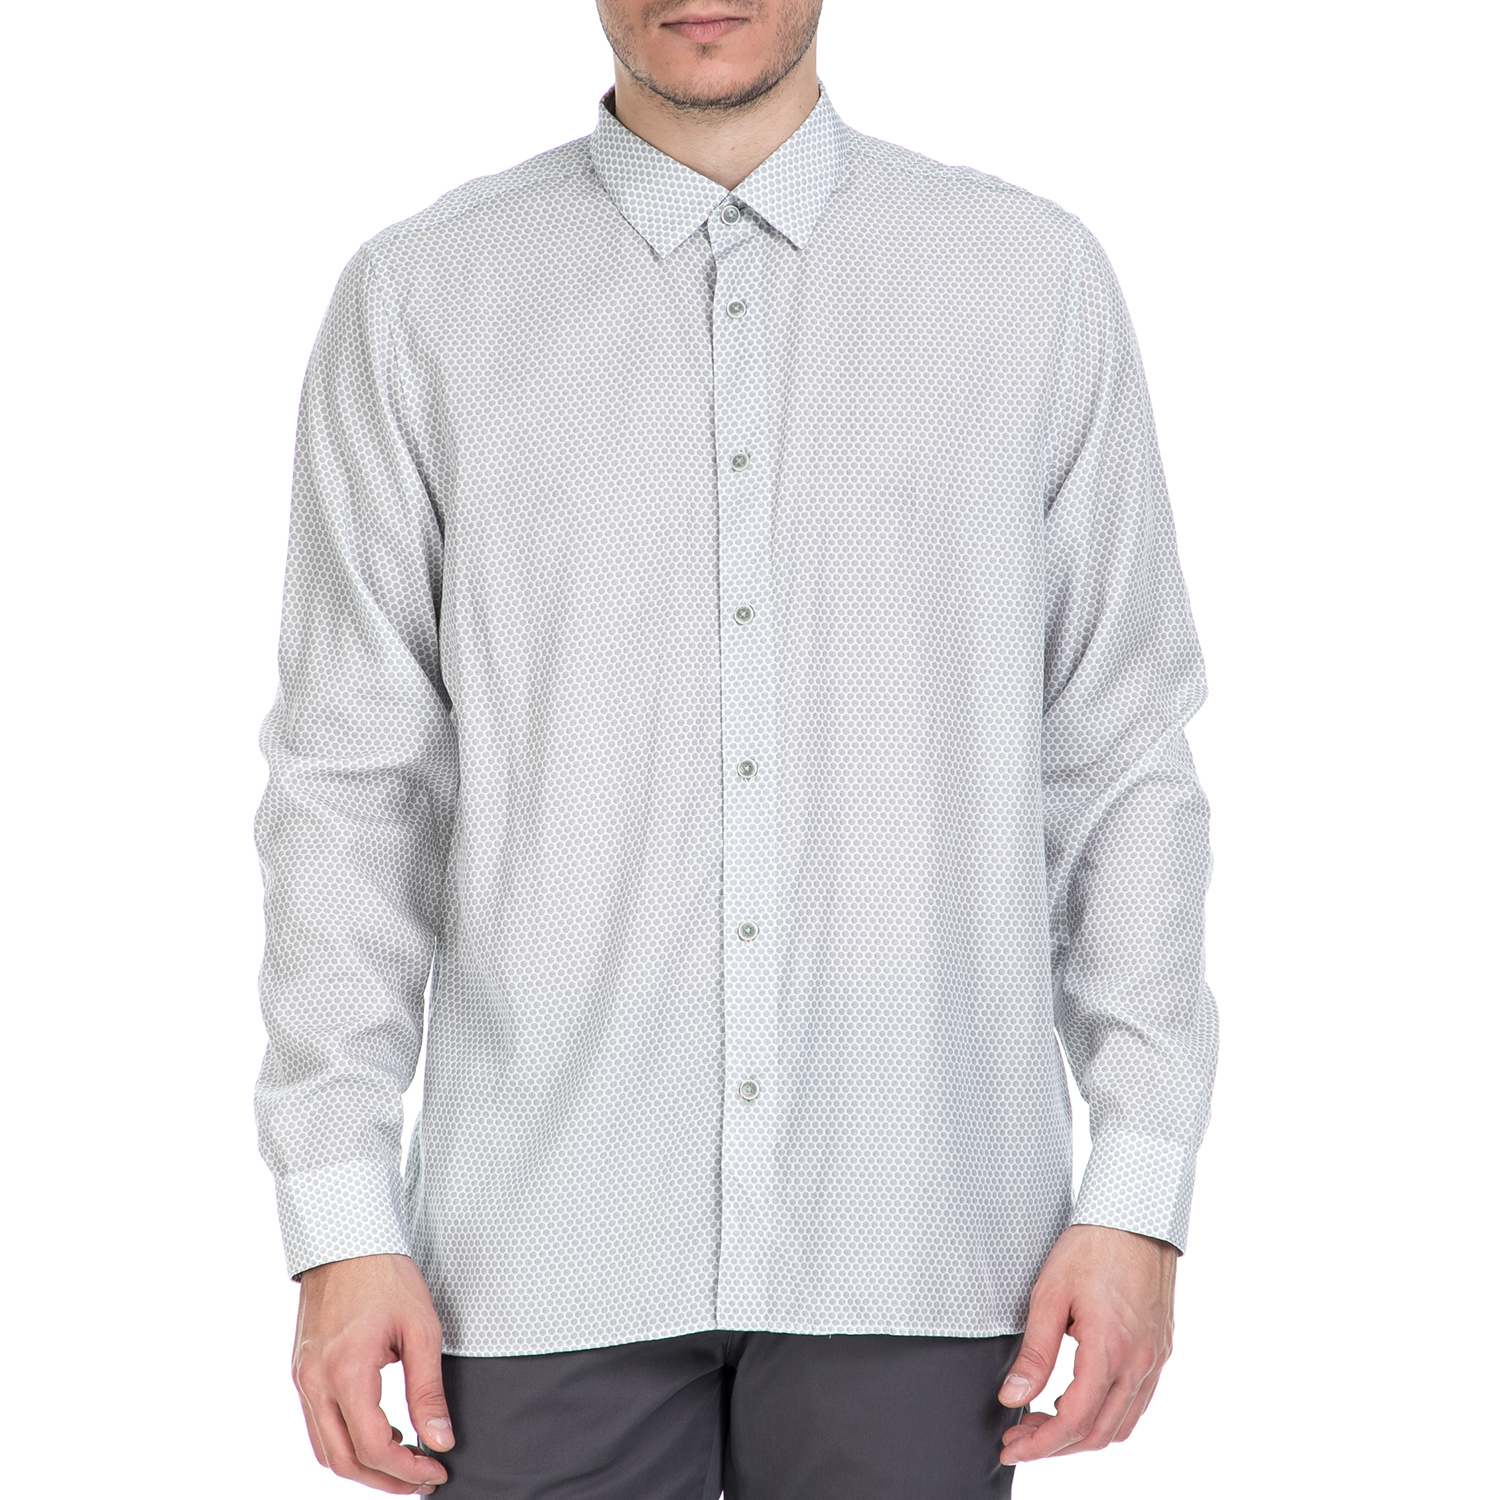 Ανδρικά/Ρούχα/Πουκάμισα/Μακρυμάνικα TED BAKER - Ανδρικό μακρυμάνικο πουκάμισο Ted Baker λευκό με print